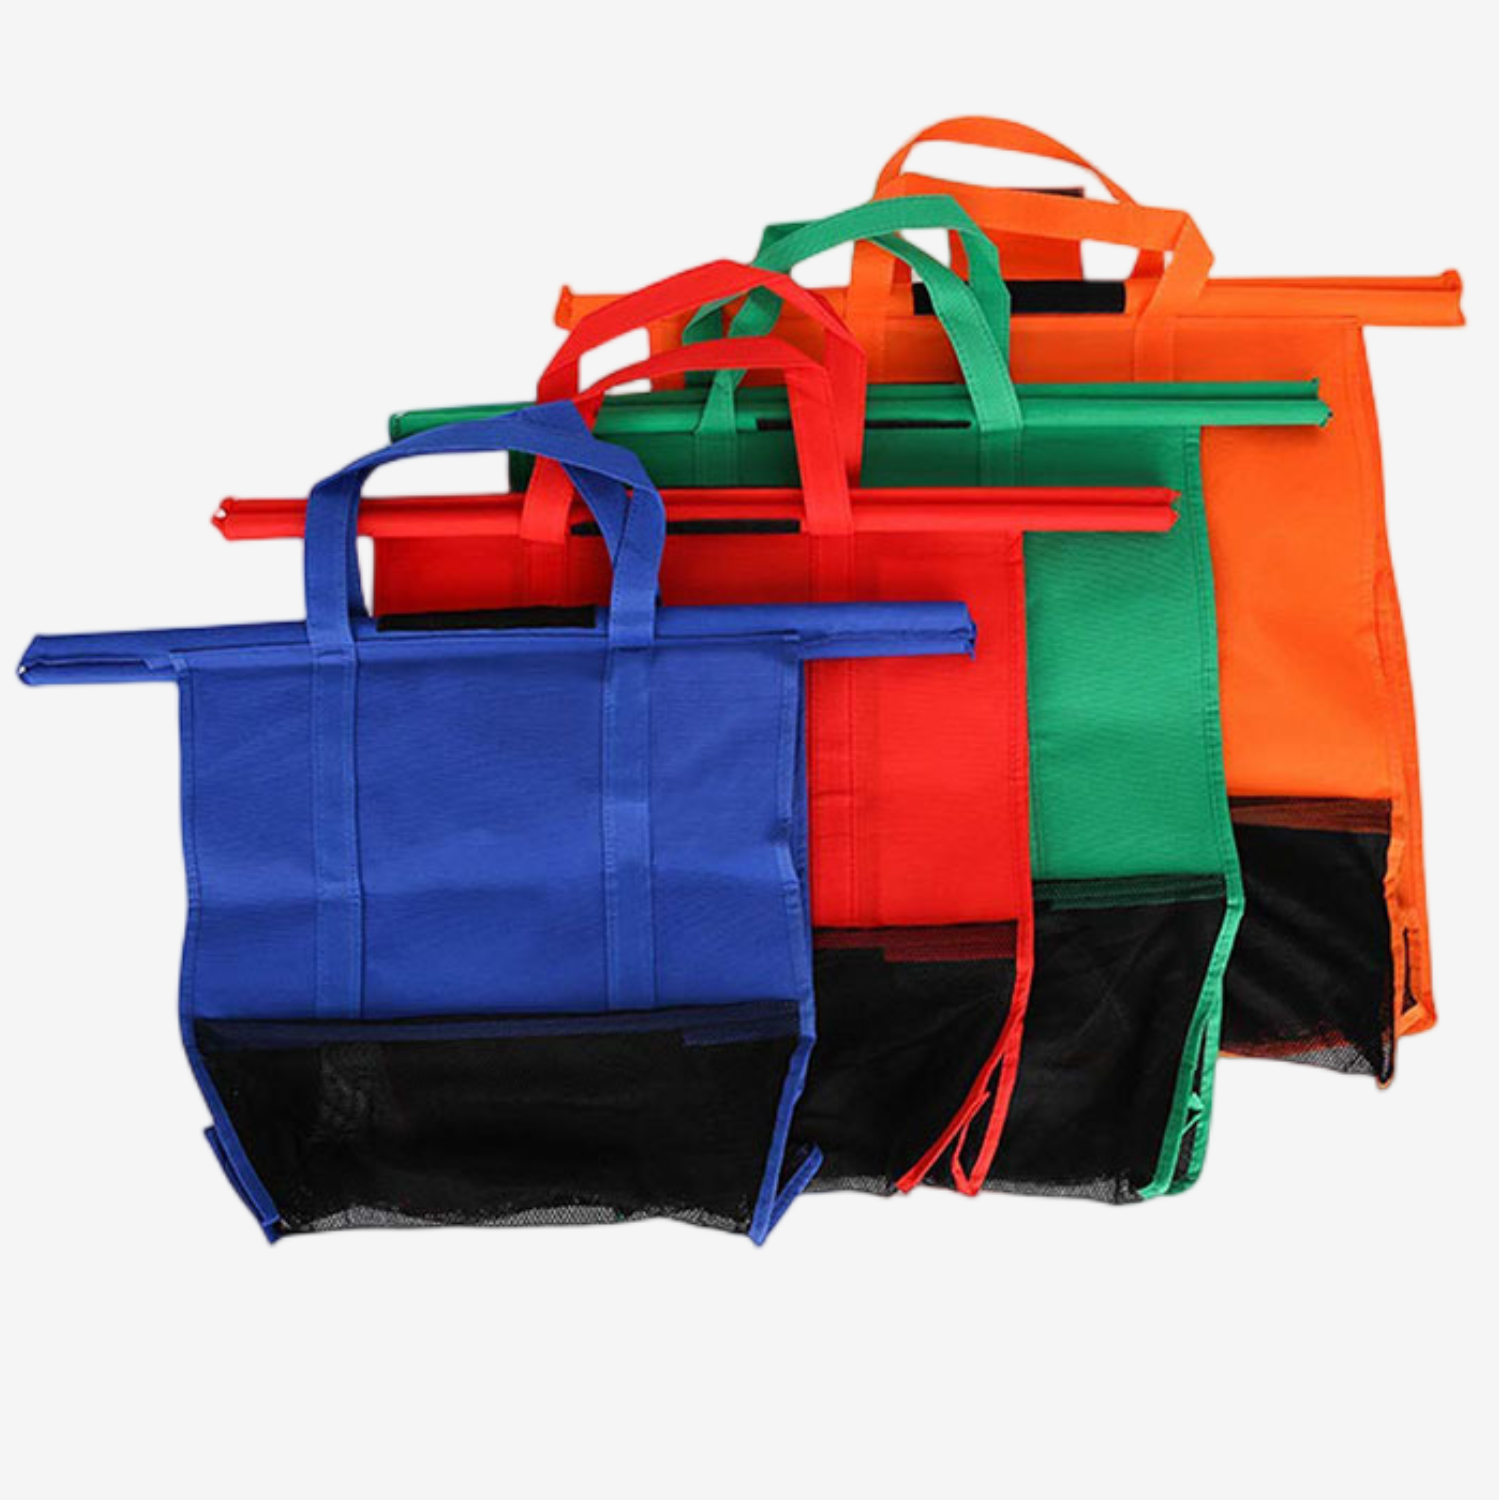 Paquete de 4 bolsas reutilizables para carrito de la compra con diferentes colores, fáciles de usar y resistentes. 